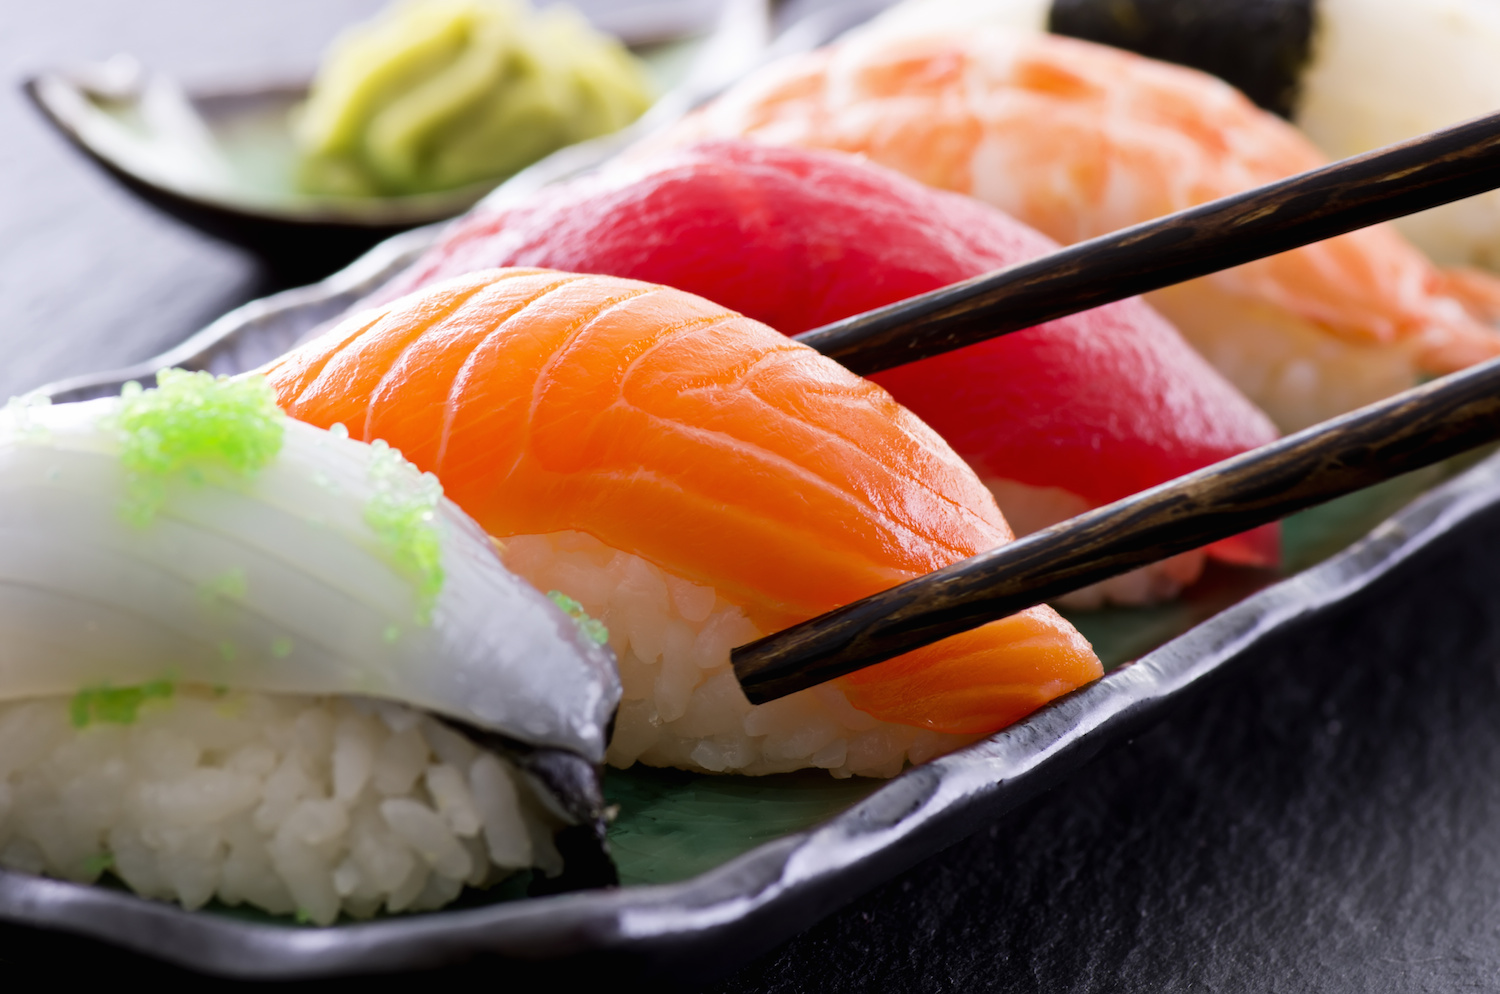 sushi rolează bine pentru pierderea în greutate